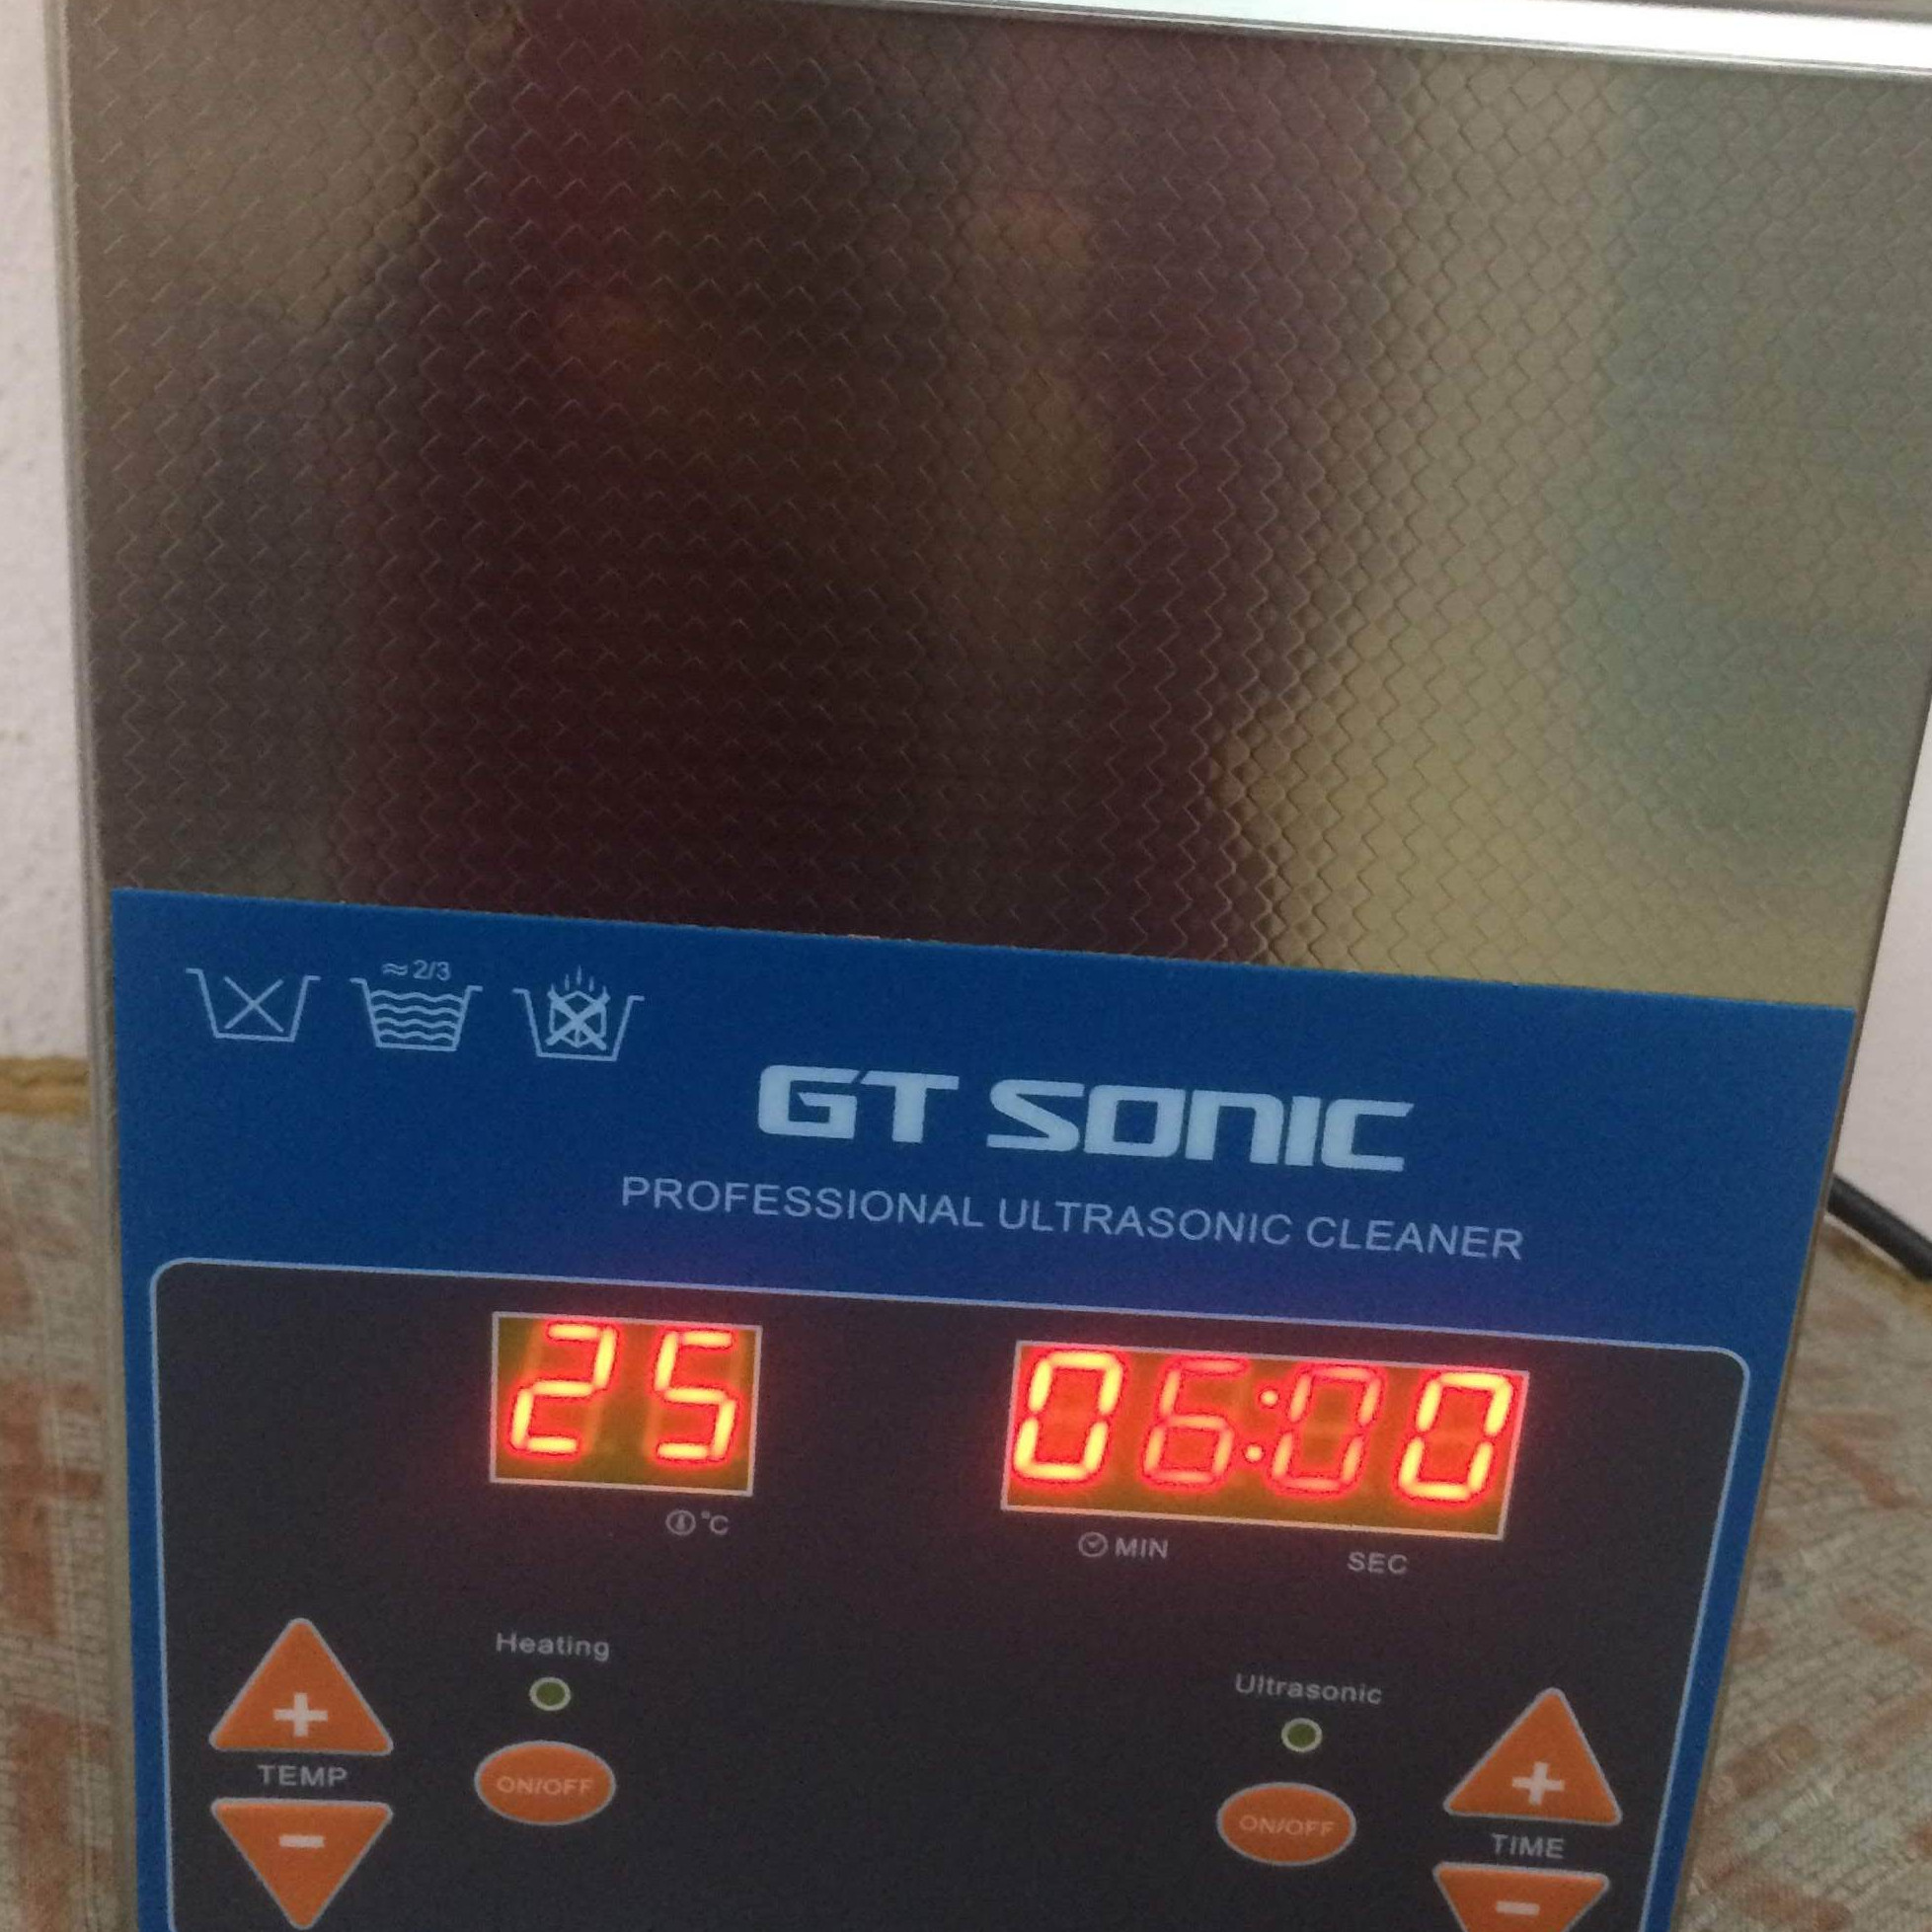 Bể rửa siêu âm gtsonic, VGT-1620QTD, 2 lít, làm sạch các thiết bị gia đình, dụng cụ nha khoa, thiết bị điện tử, đồng hồ, trang sức – Hàng Chính Hãng